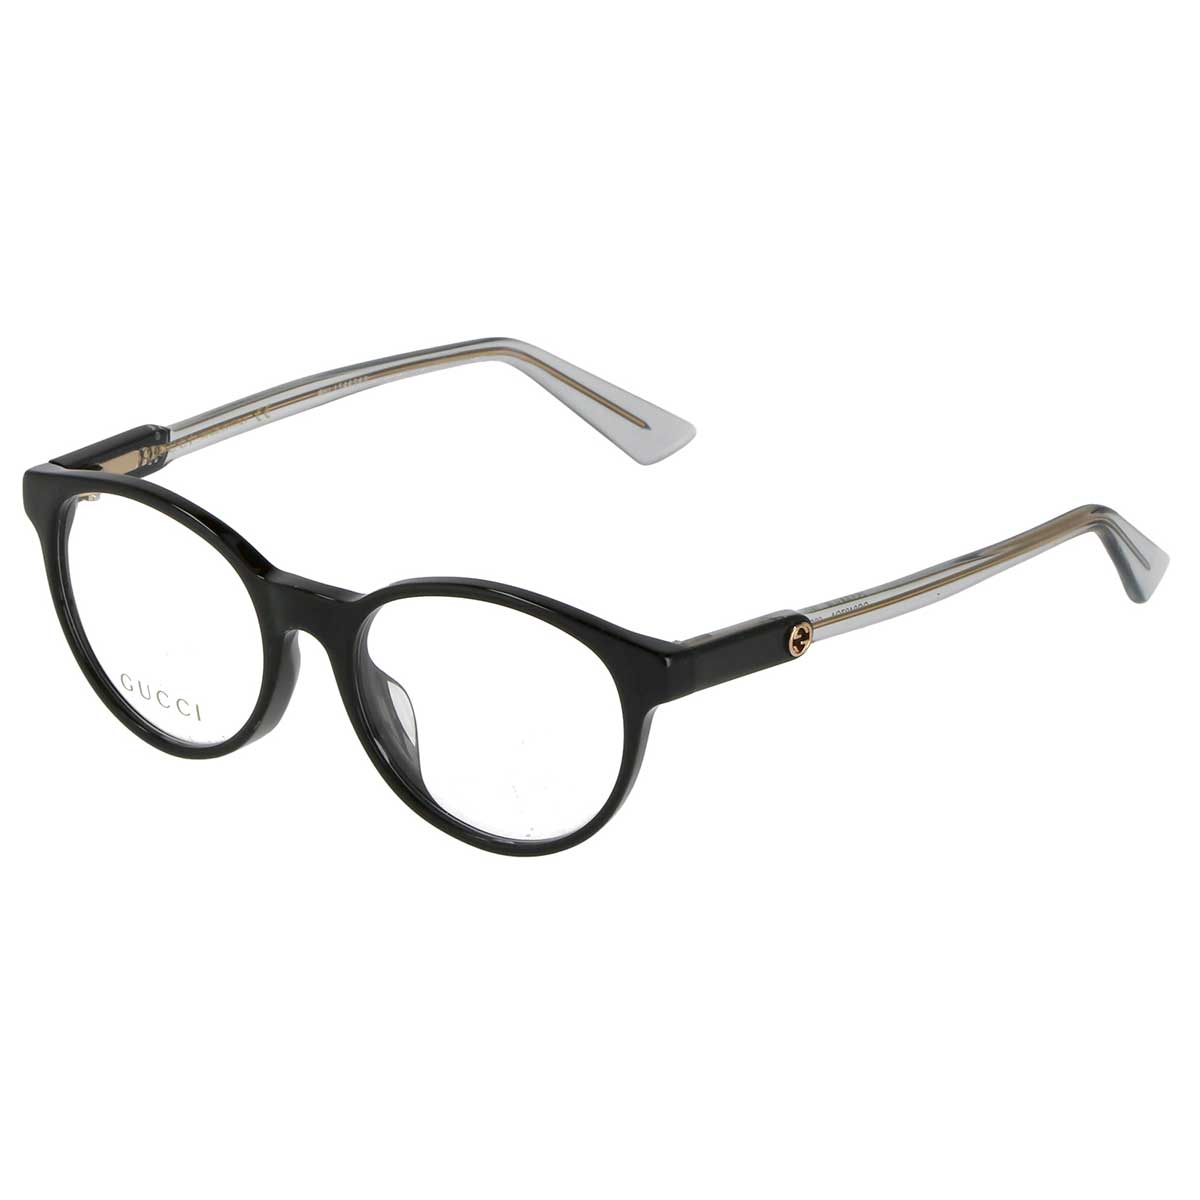 グッチ GUCCI メガネフレーム 眼鏡 フレームのみ GG0487OA-005 オプティカルフレーム ウェリントン レディース ブラック+グレー系 メガネ